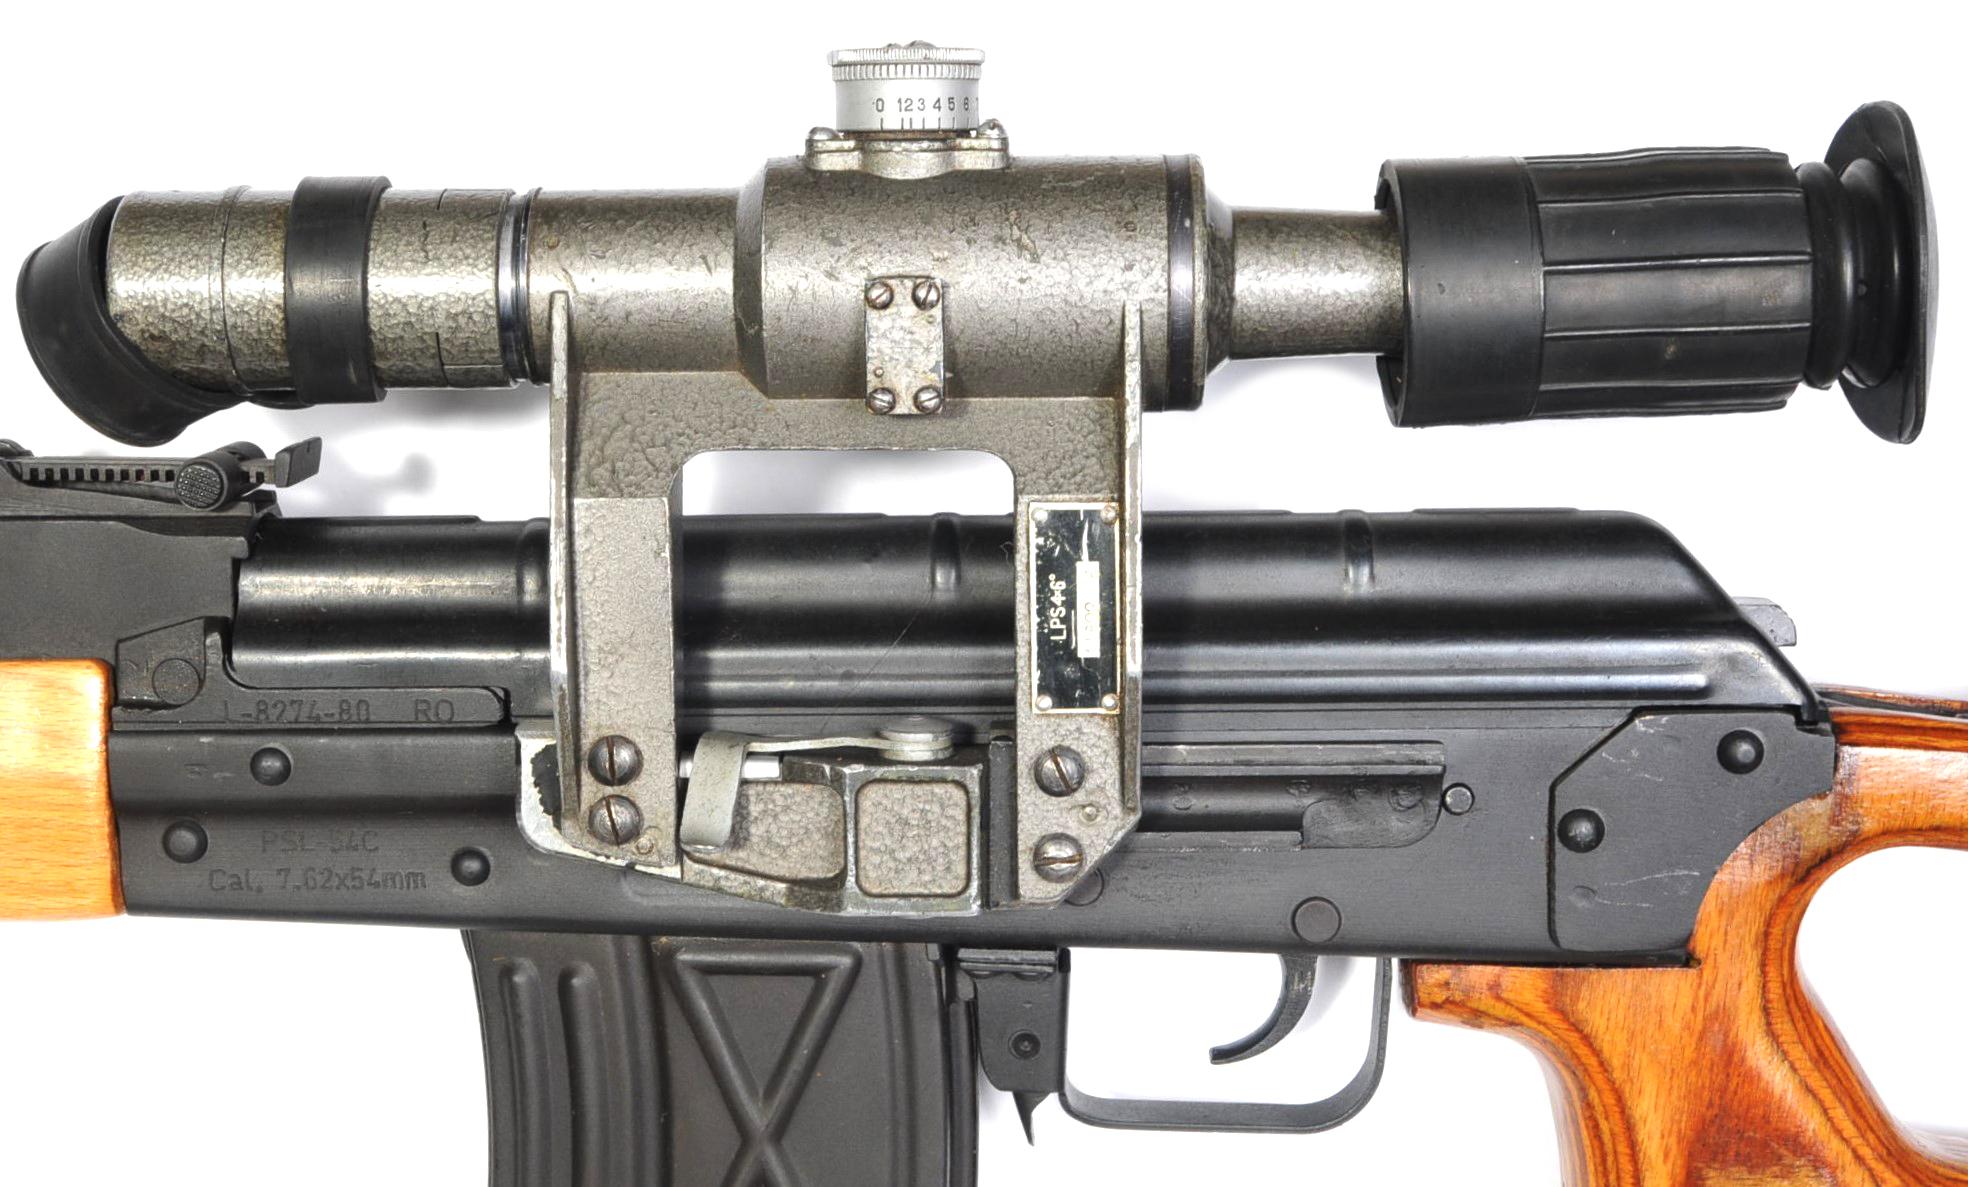 Romanian Romarm PSL-54C 7.62x54r mm Semi-Automatic Rifle - FFL #L8274-80 (BDQ 1)